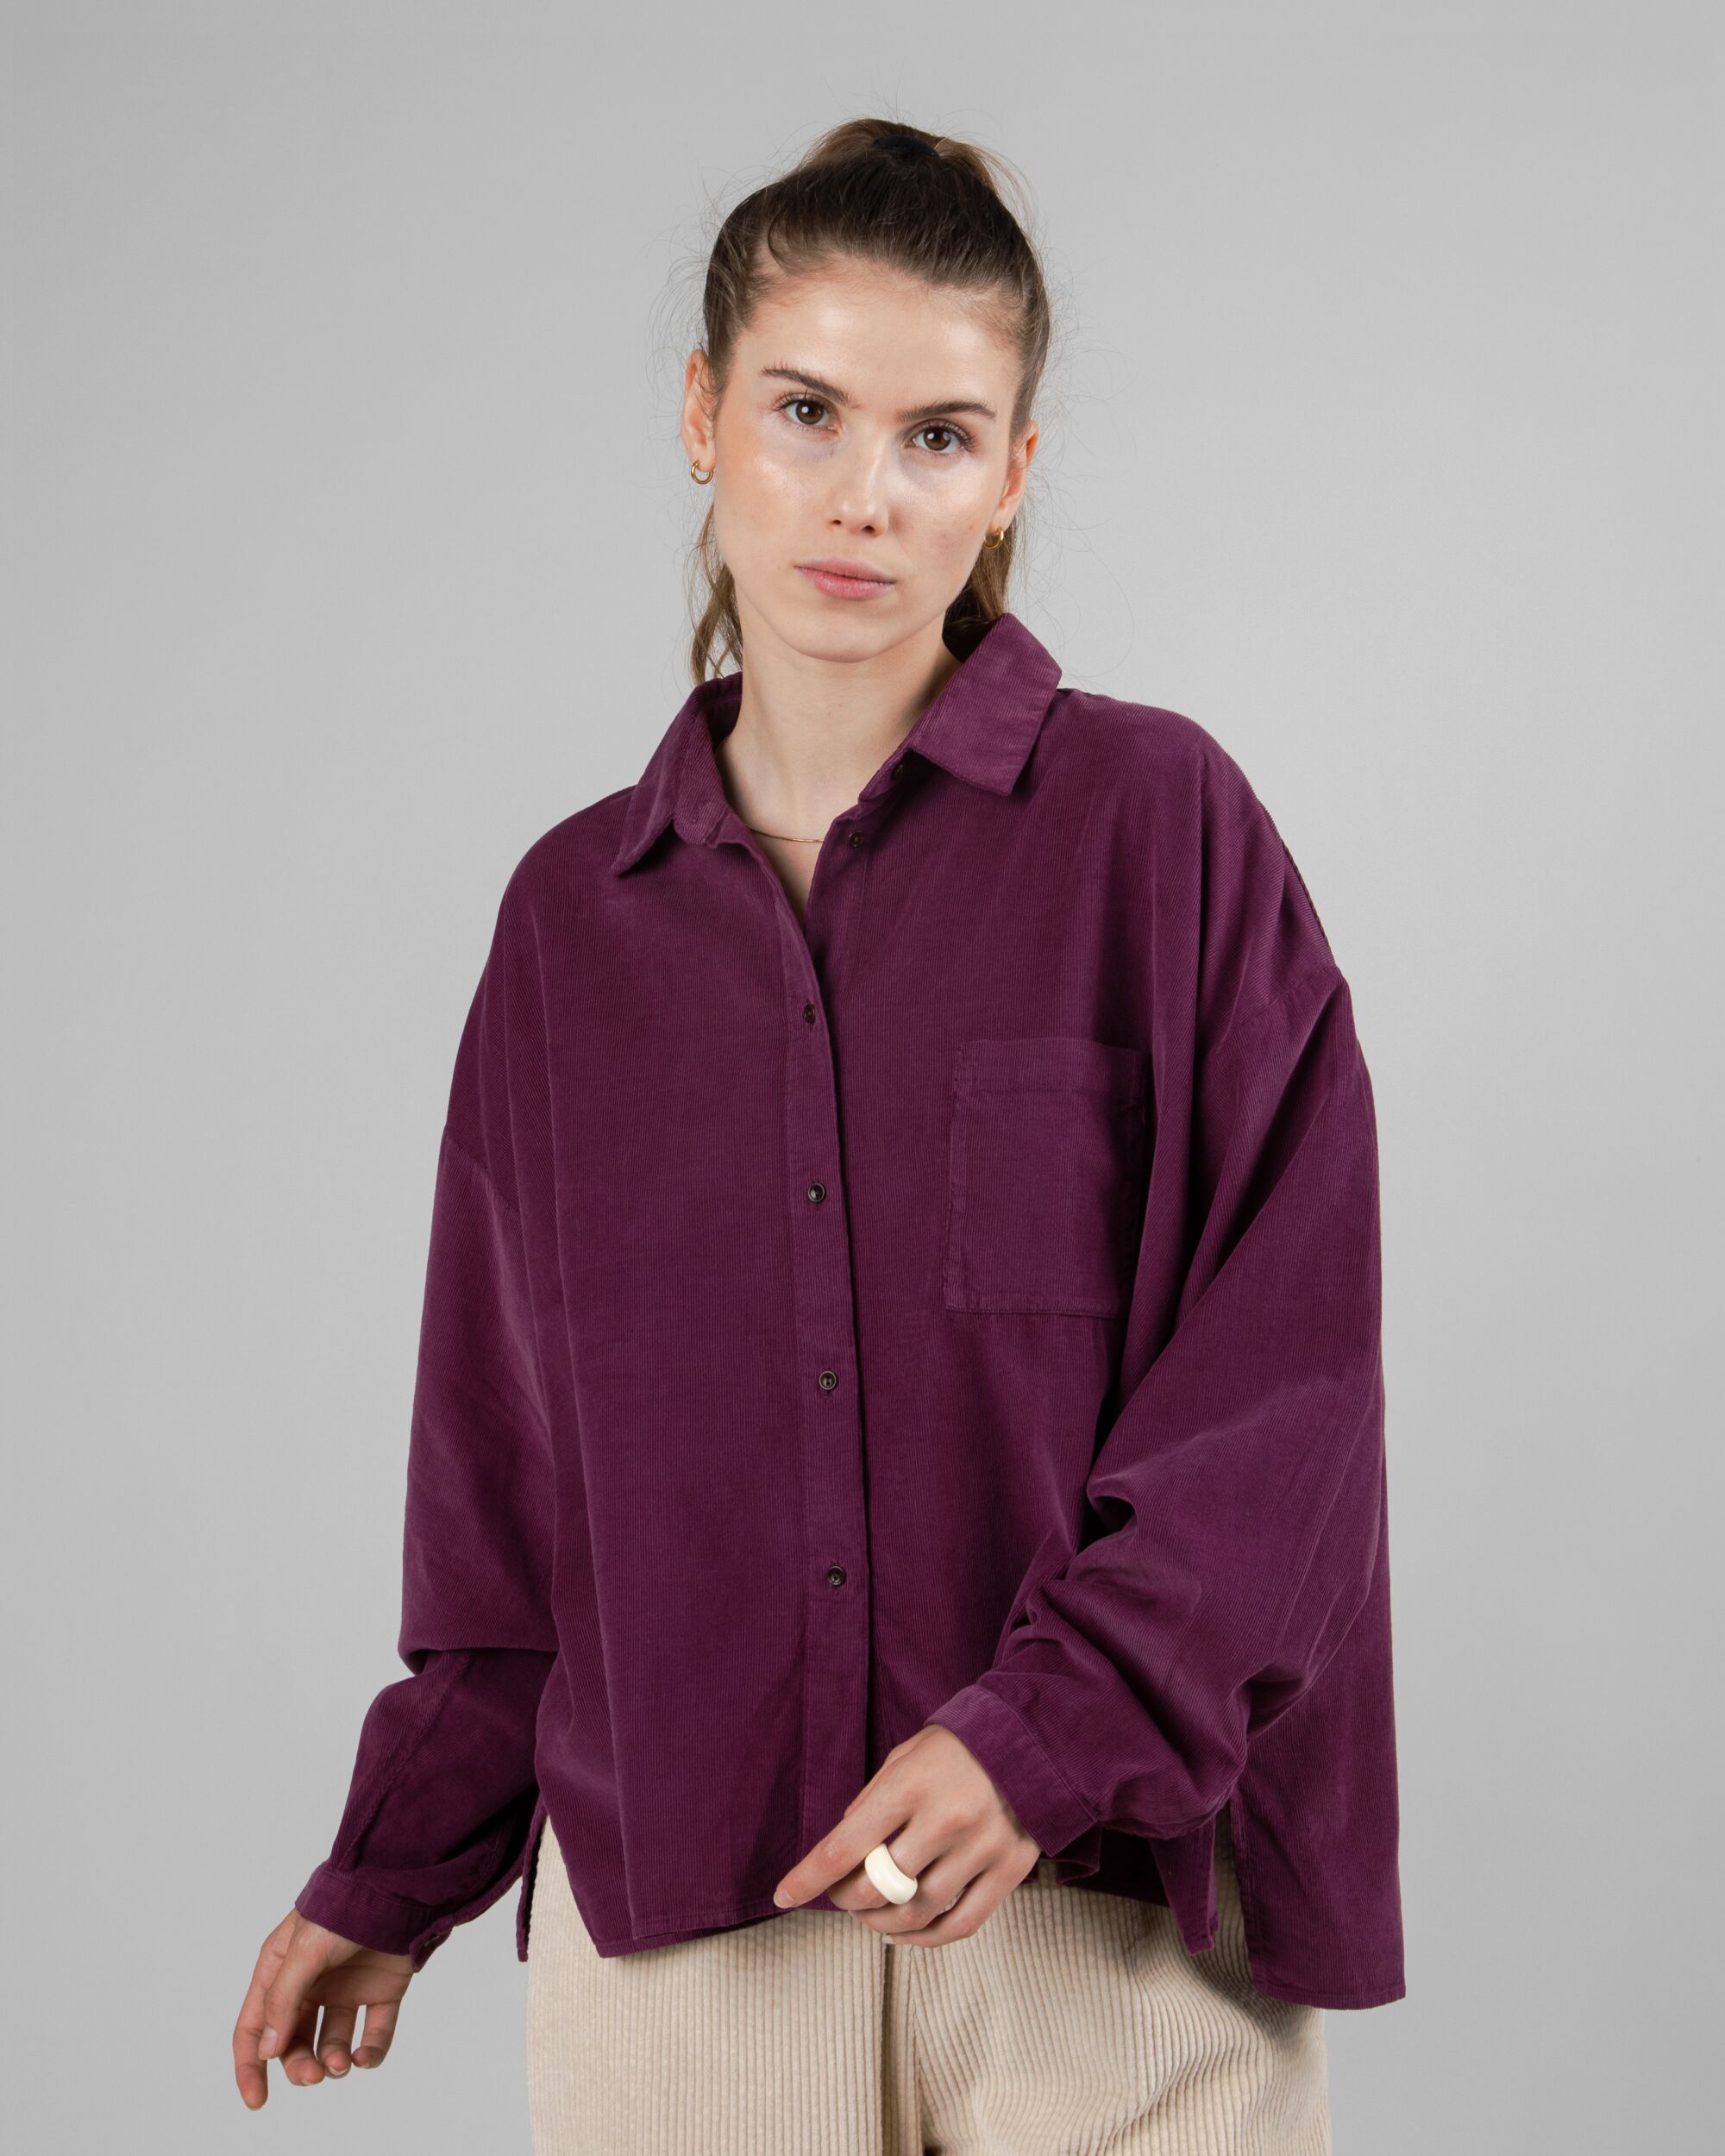 Purple Babycord Boxy blouse made of organic cotton by Brava Fabrics